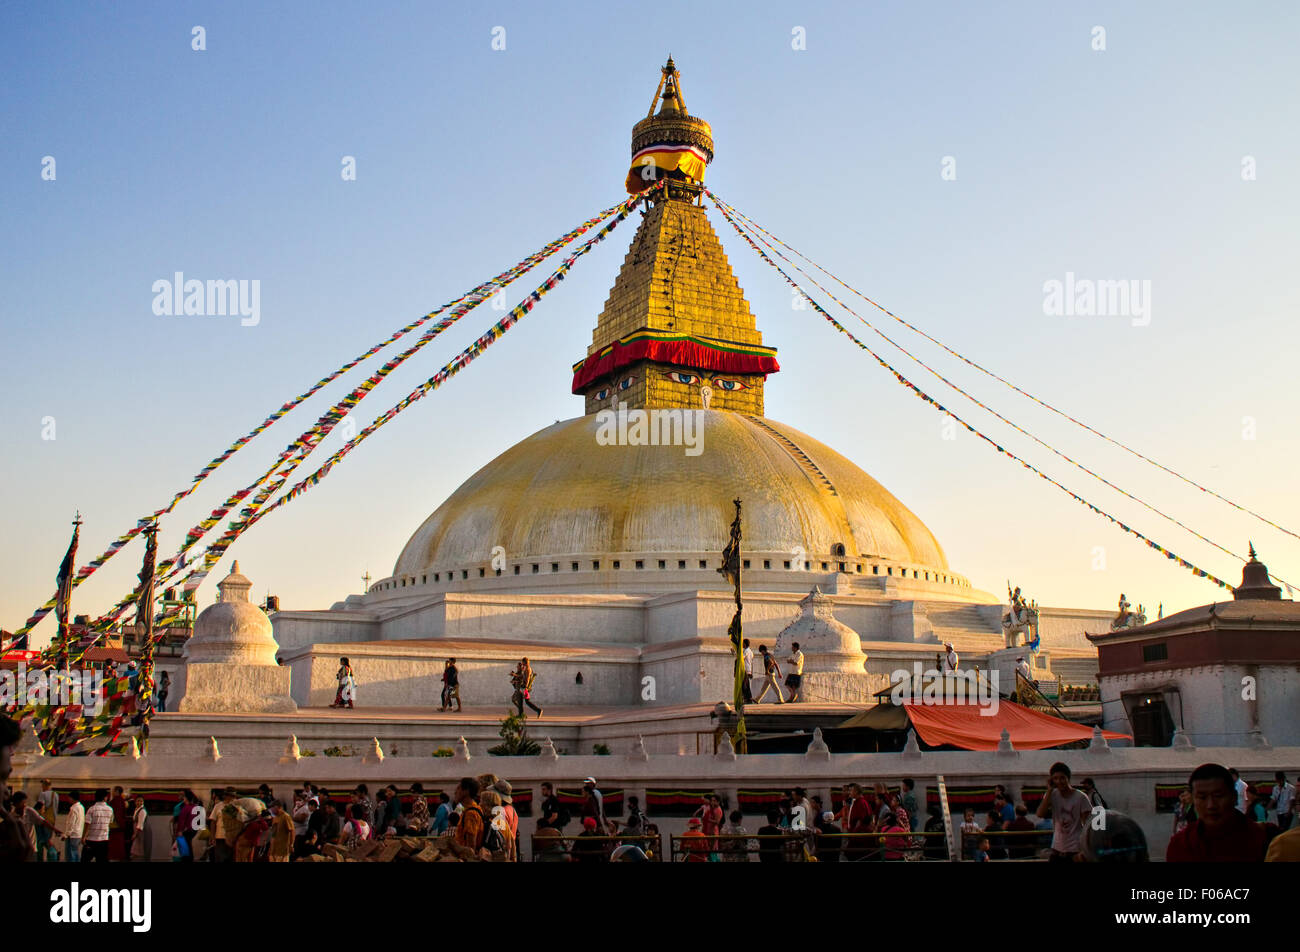 Bouddha Stupa at Boudha, Kathmandu Stock Photo